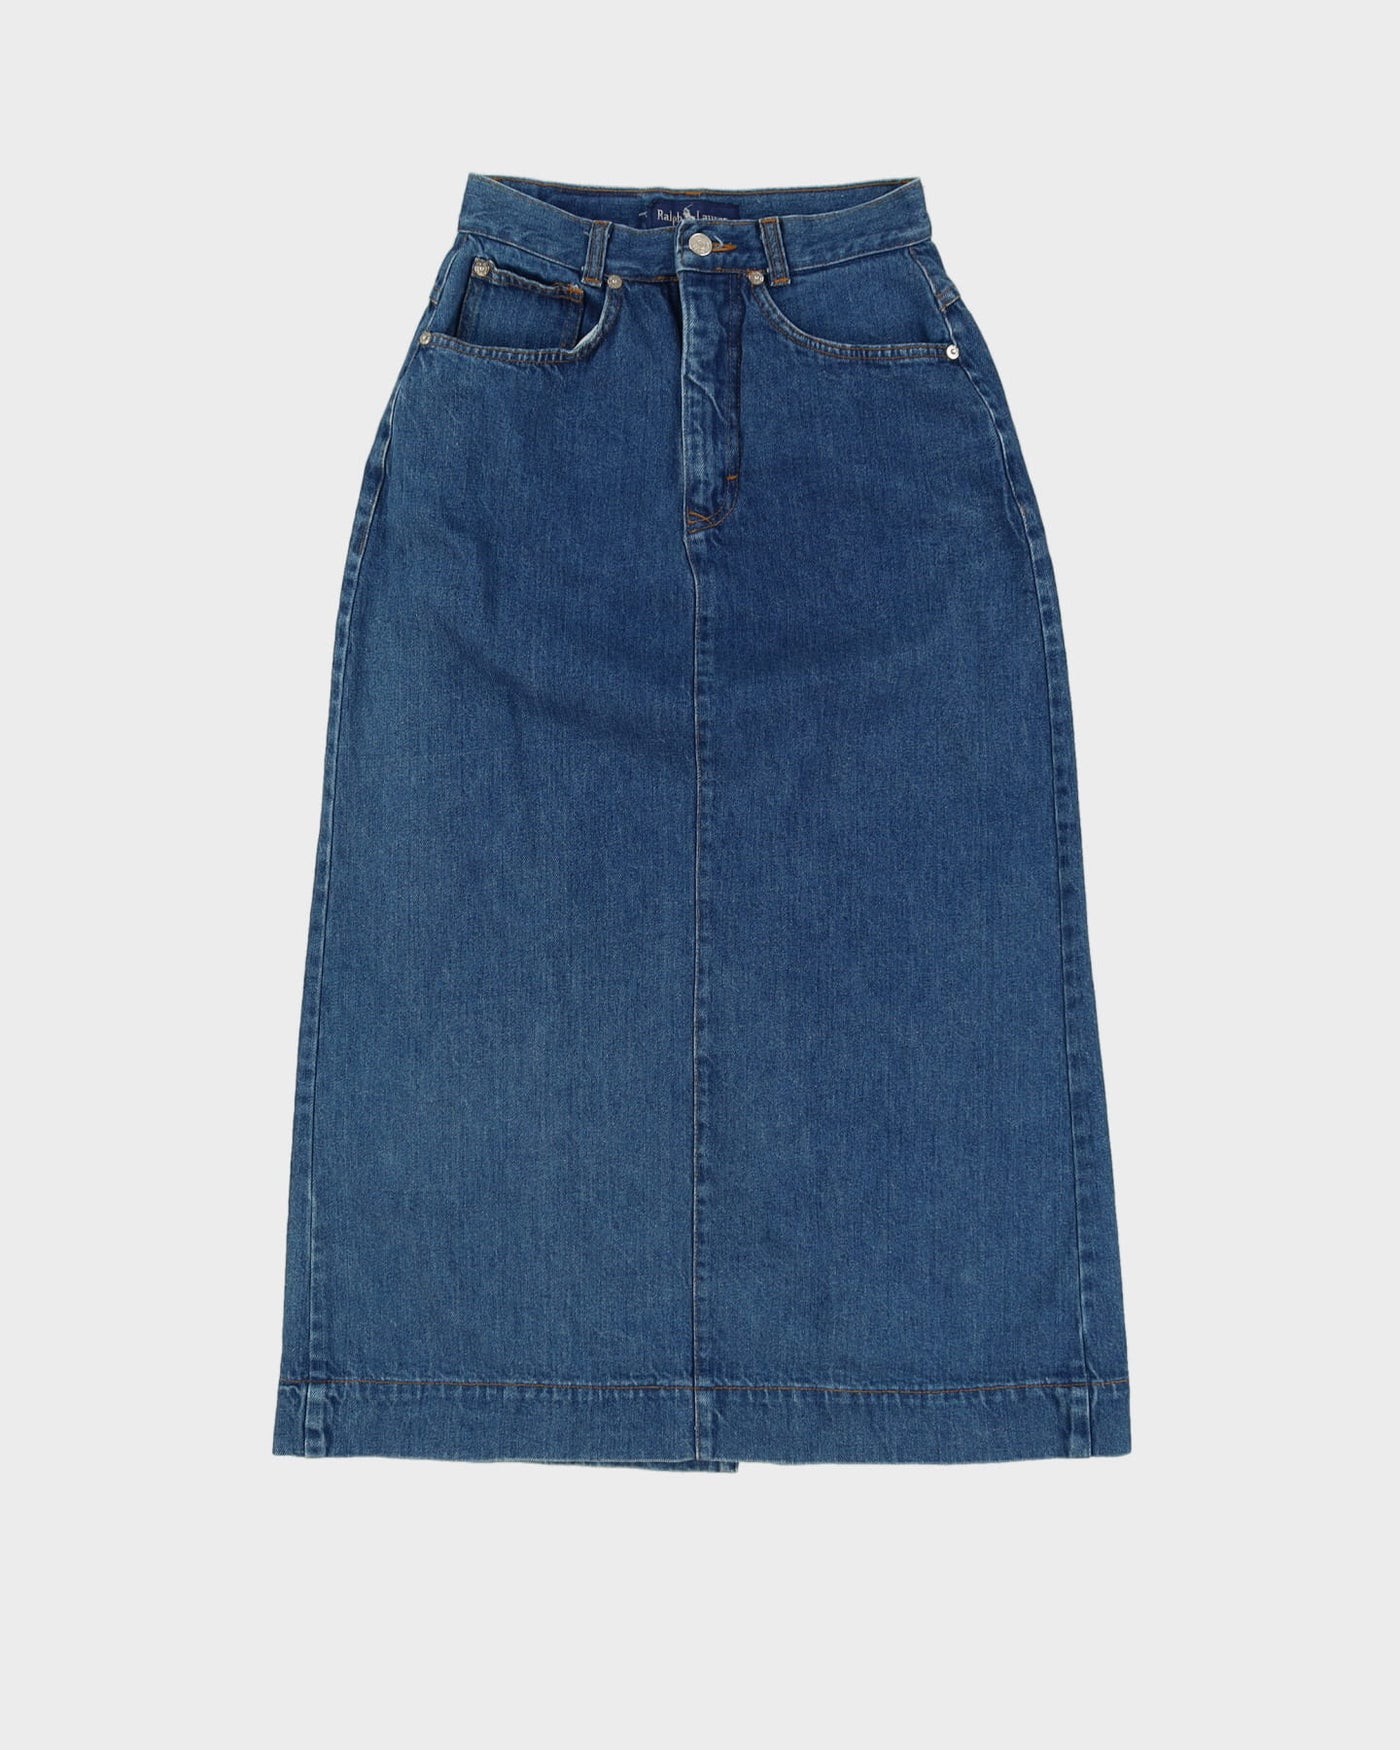 Ralph Lauren Blue Denim Pencil Skirt - XS